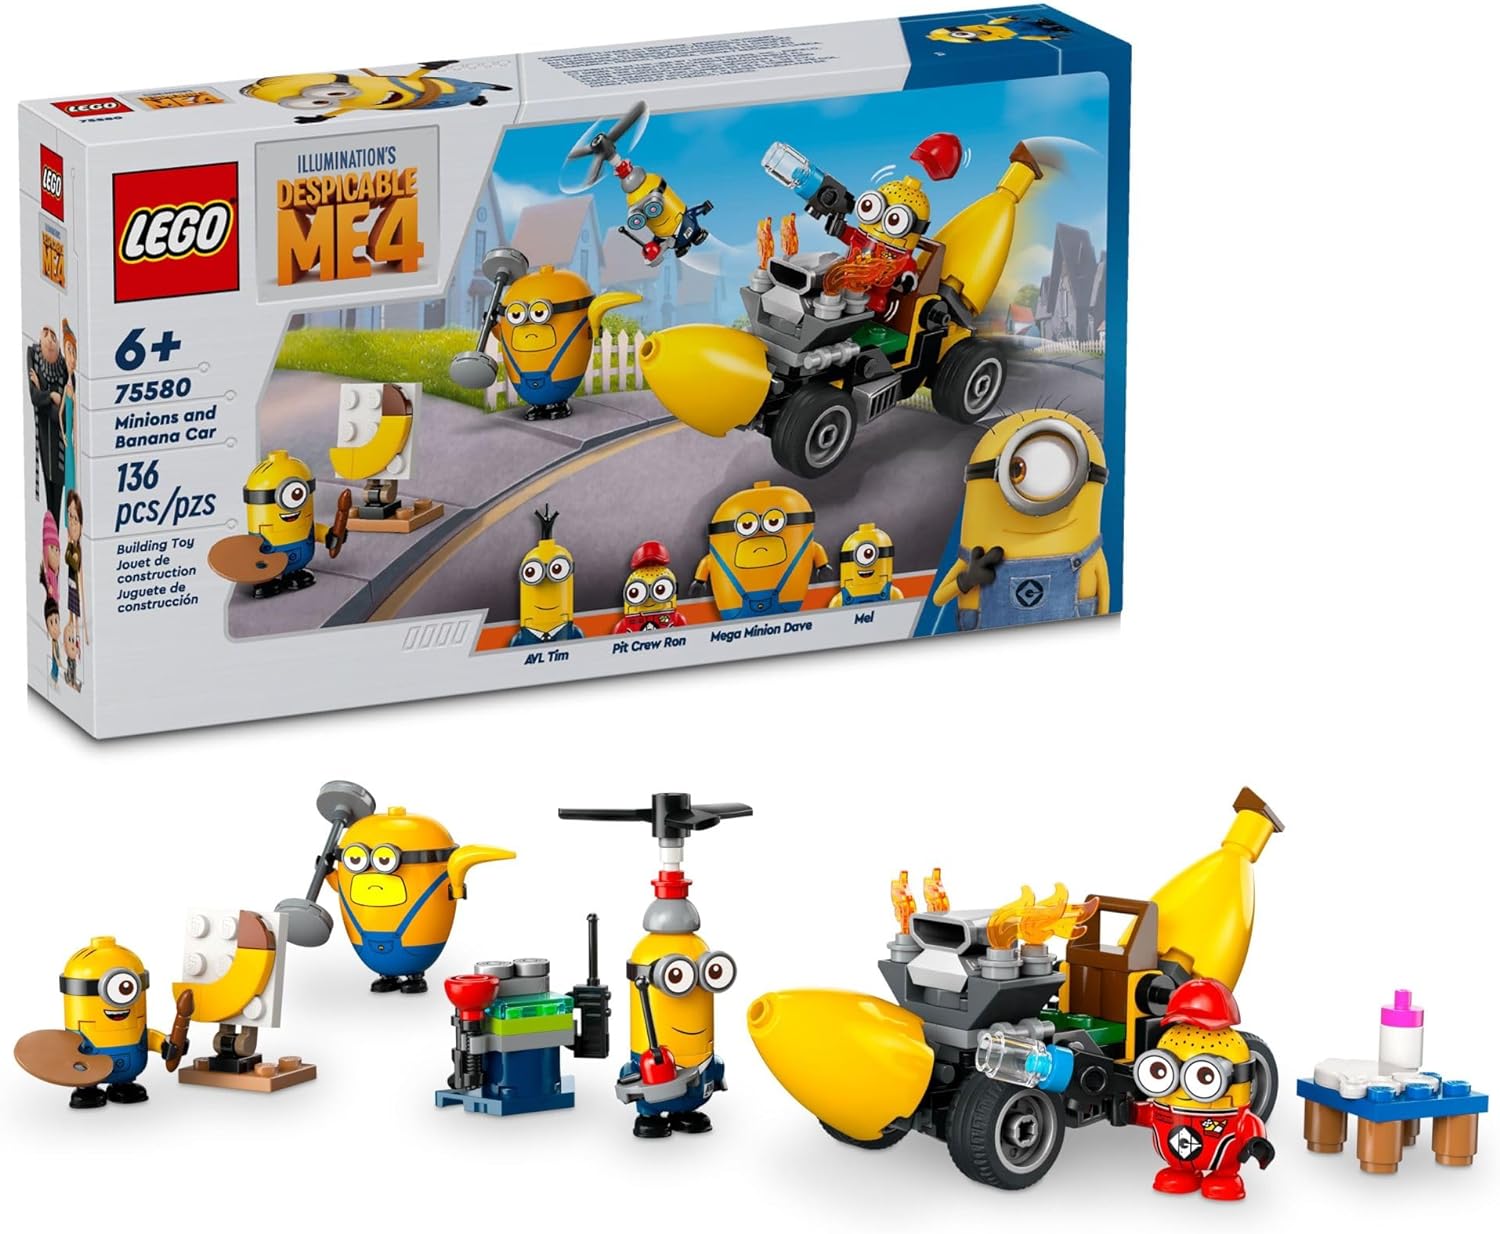 LEGO Despicable Me 4 Minions and Banana Car